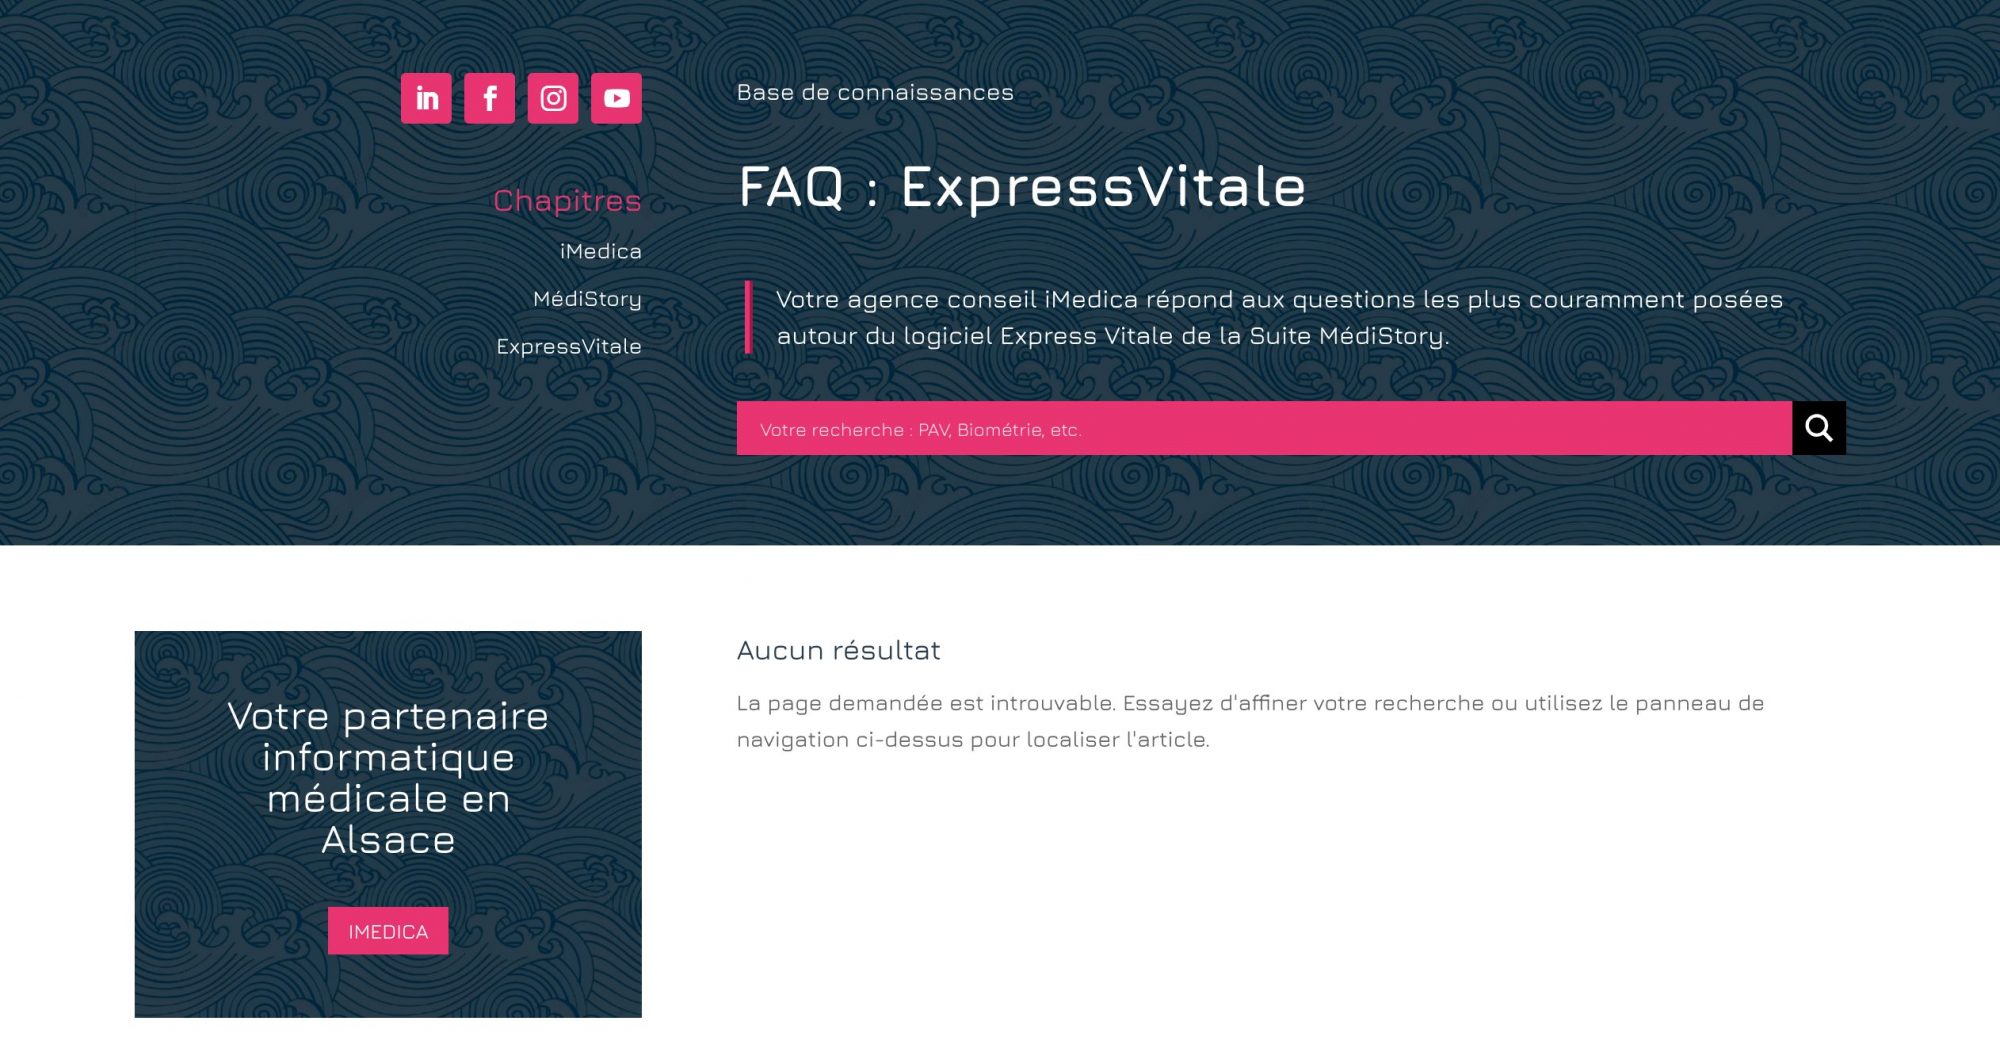 Capture d'écran de la base de connaissances du site imedica.fr